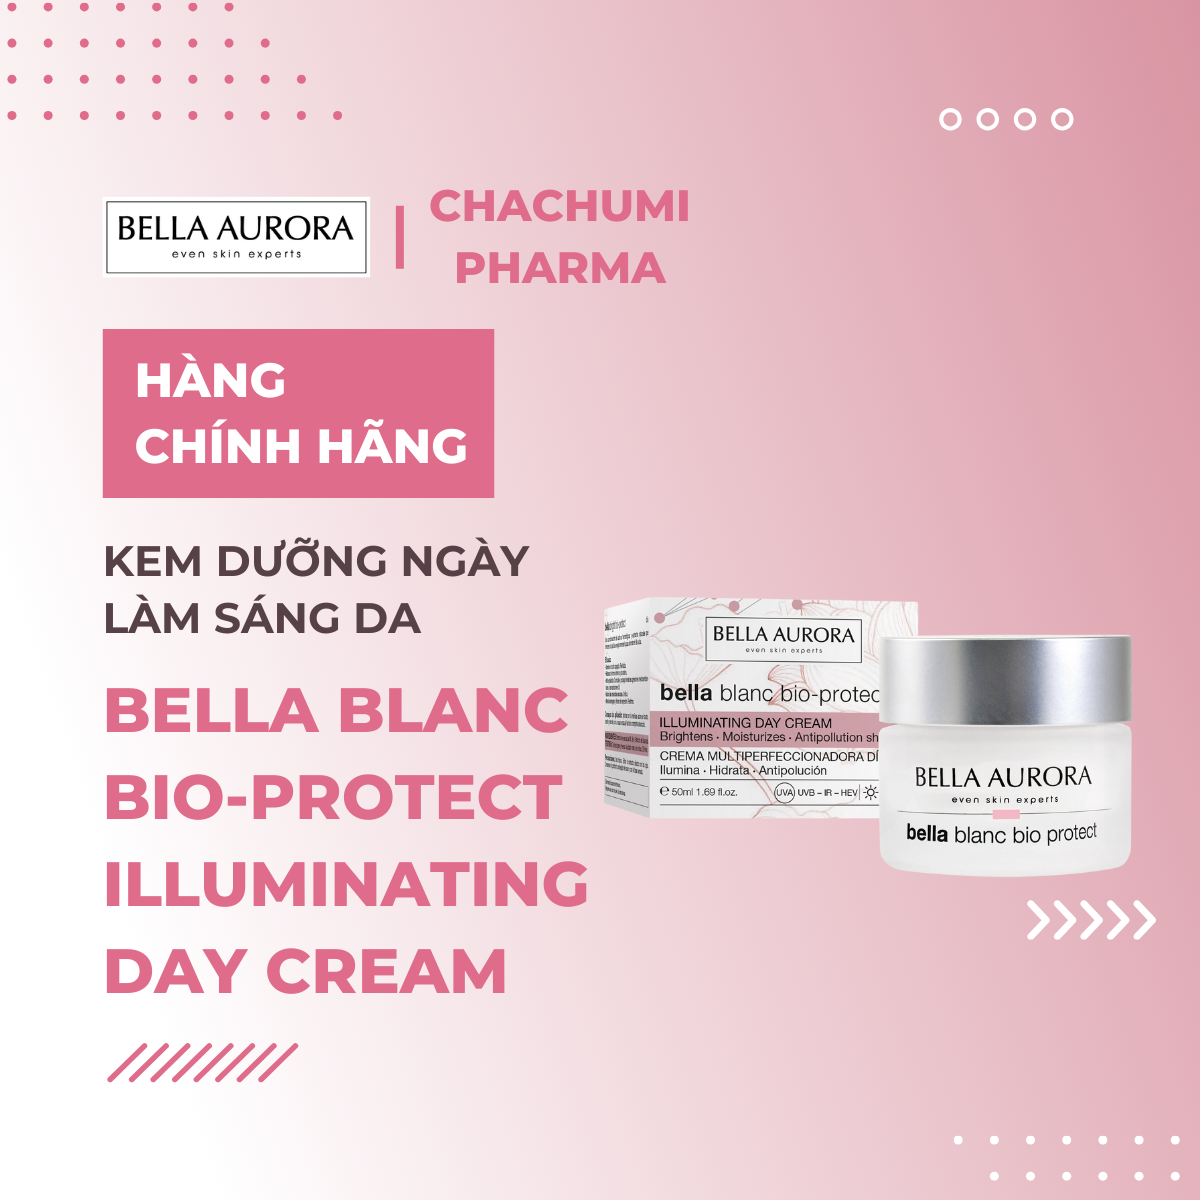 Bella blanc bio-protect illuminating day cream - Kem Dưỡng Ngày Làm Sáng Da